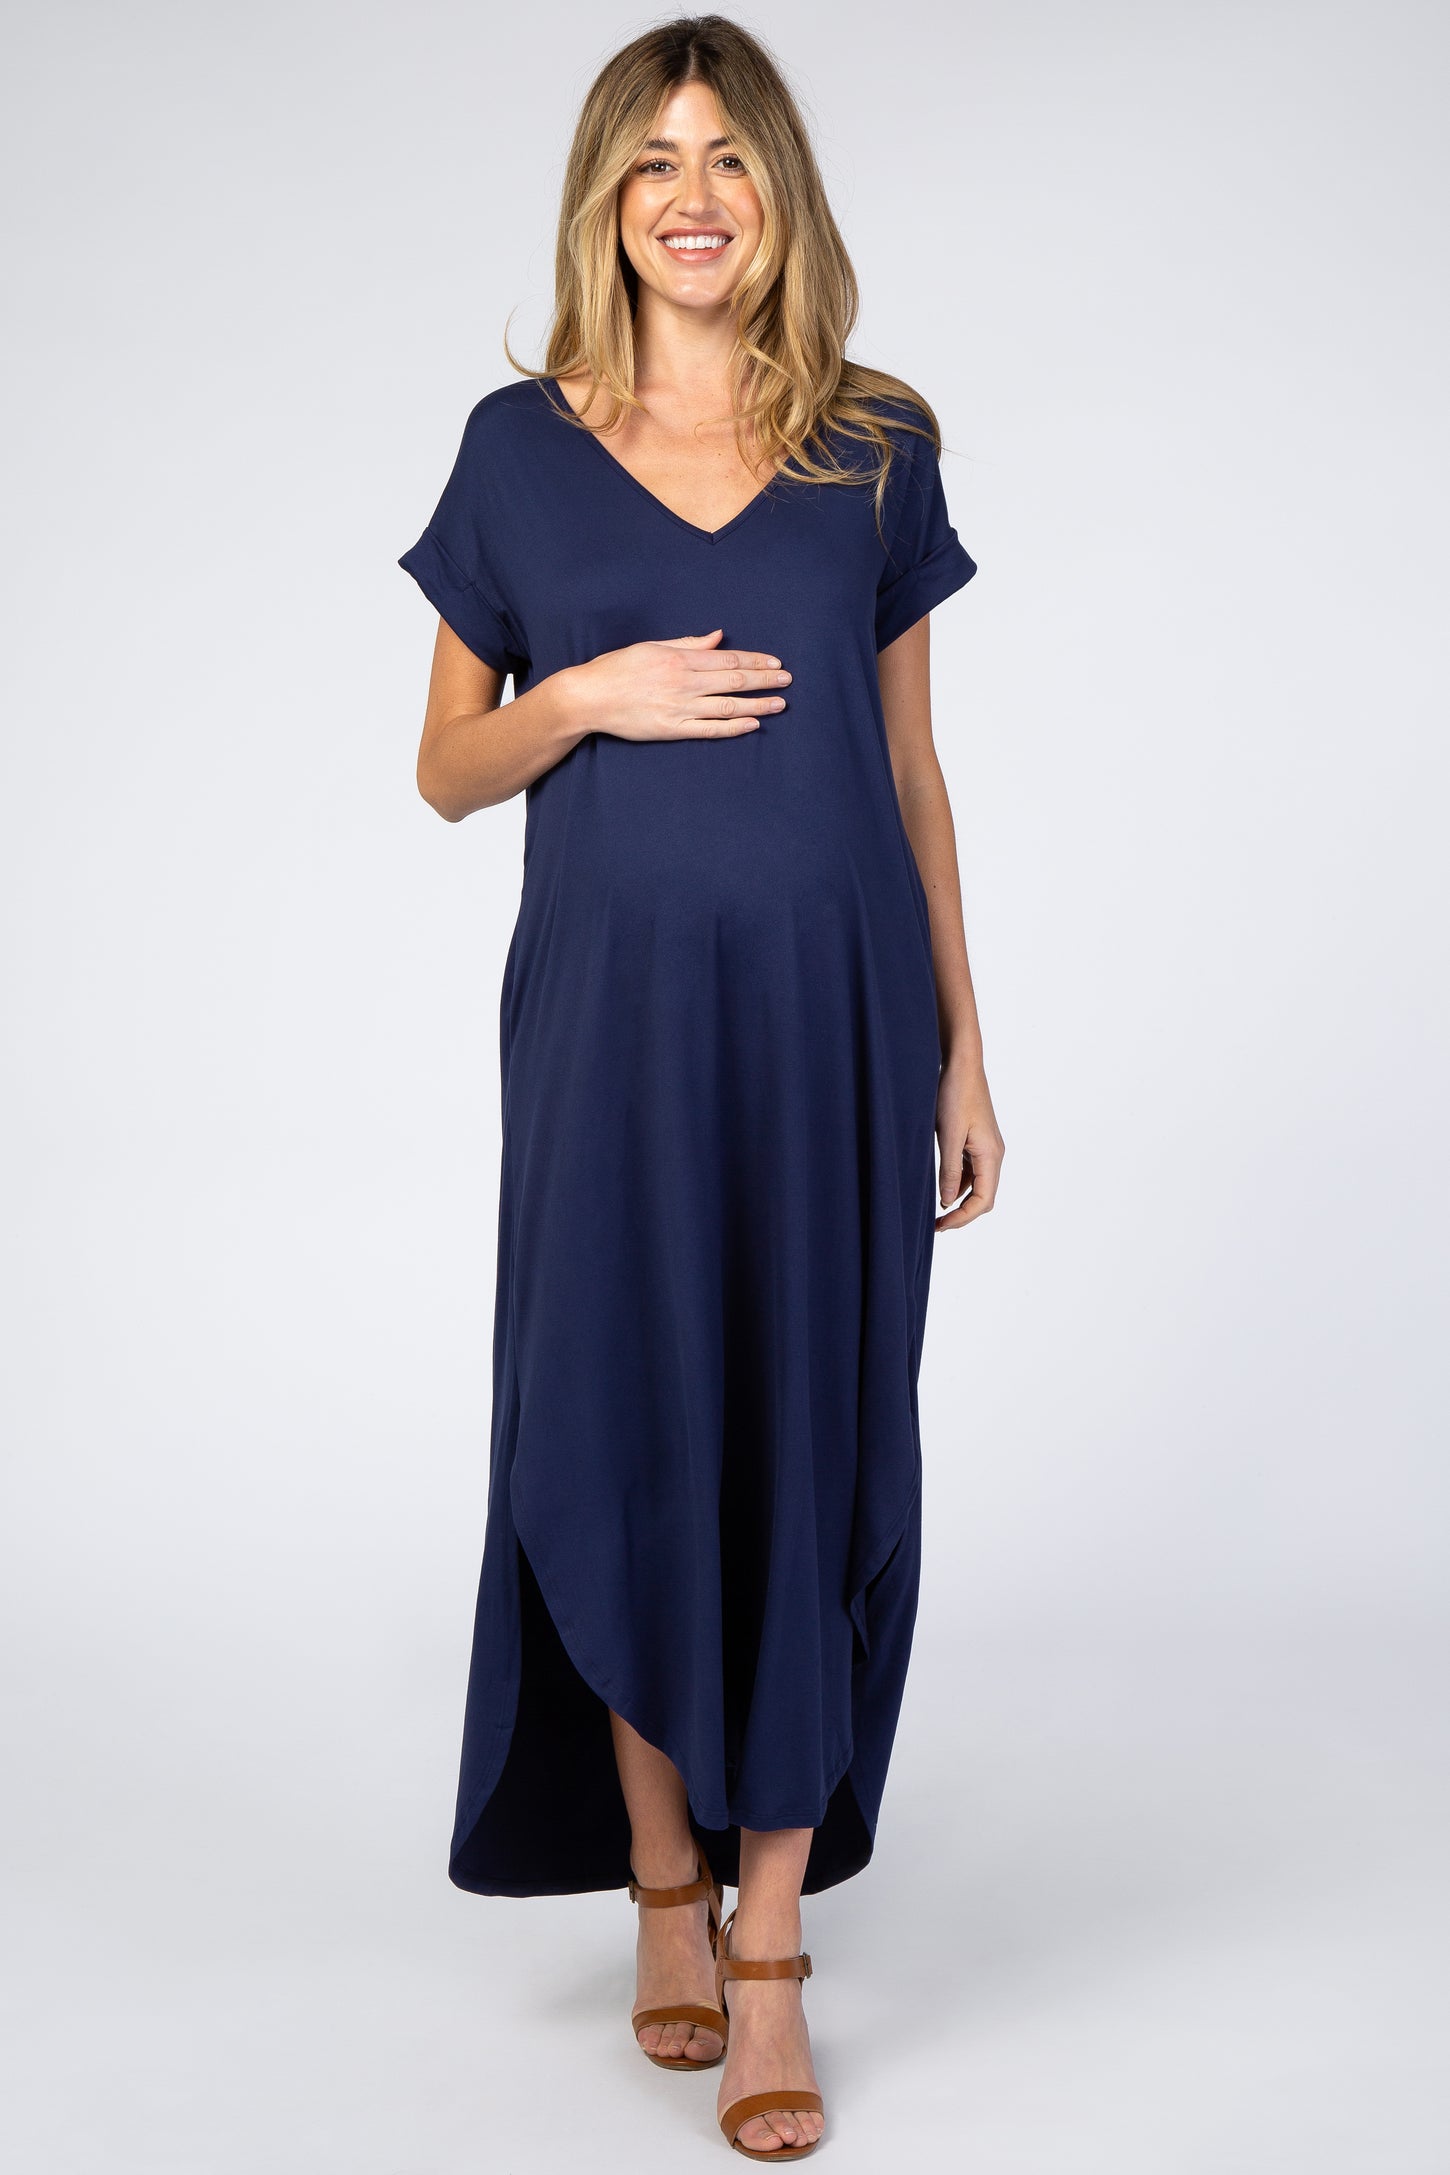 Navy Side Slit Maternity Maxi Dress